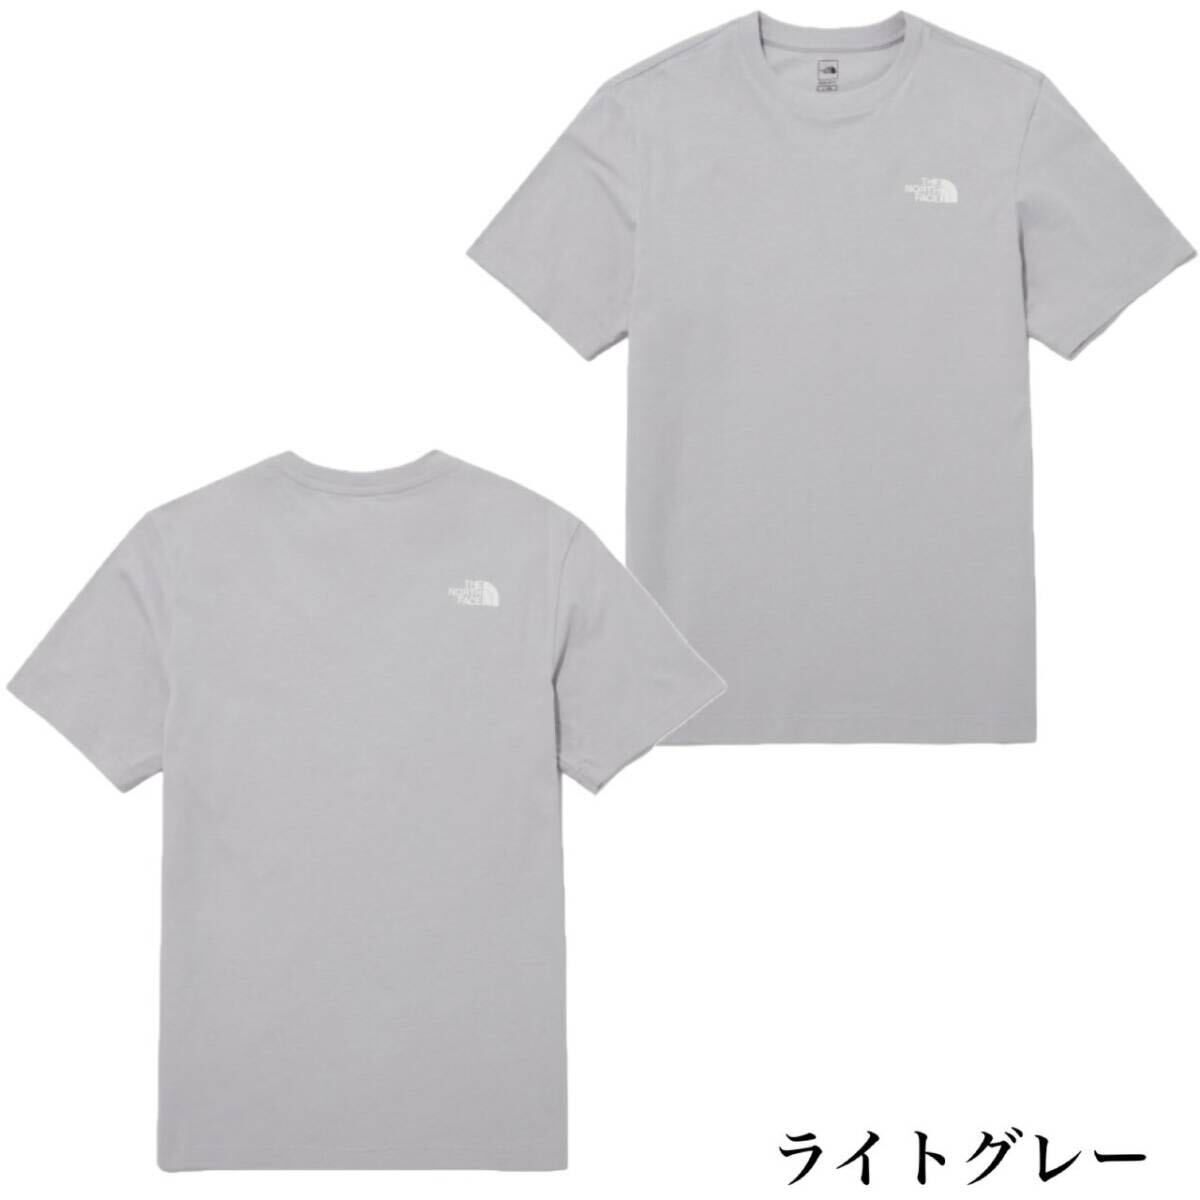 ザ ノースフェイス Tシャツ NT7U ライトグレー Mサイズ コットン素材 クルーネック シンプルロゴ THE NORTH FACE COTTON S/S TEE 新品